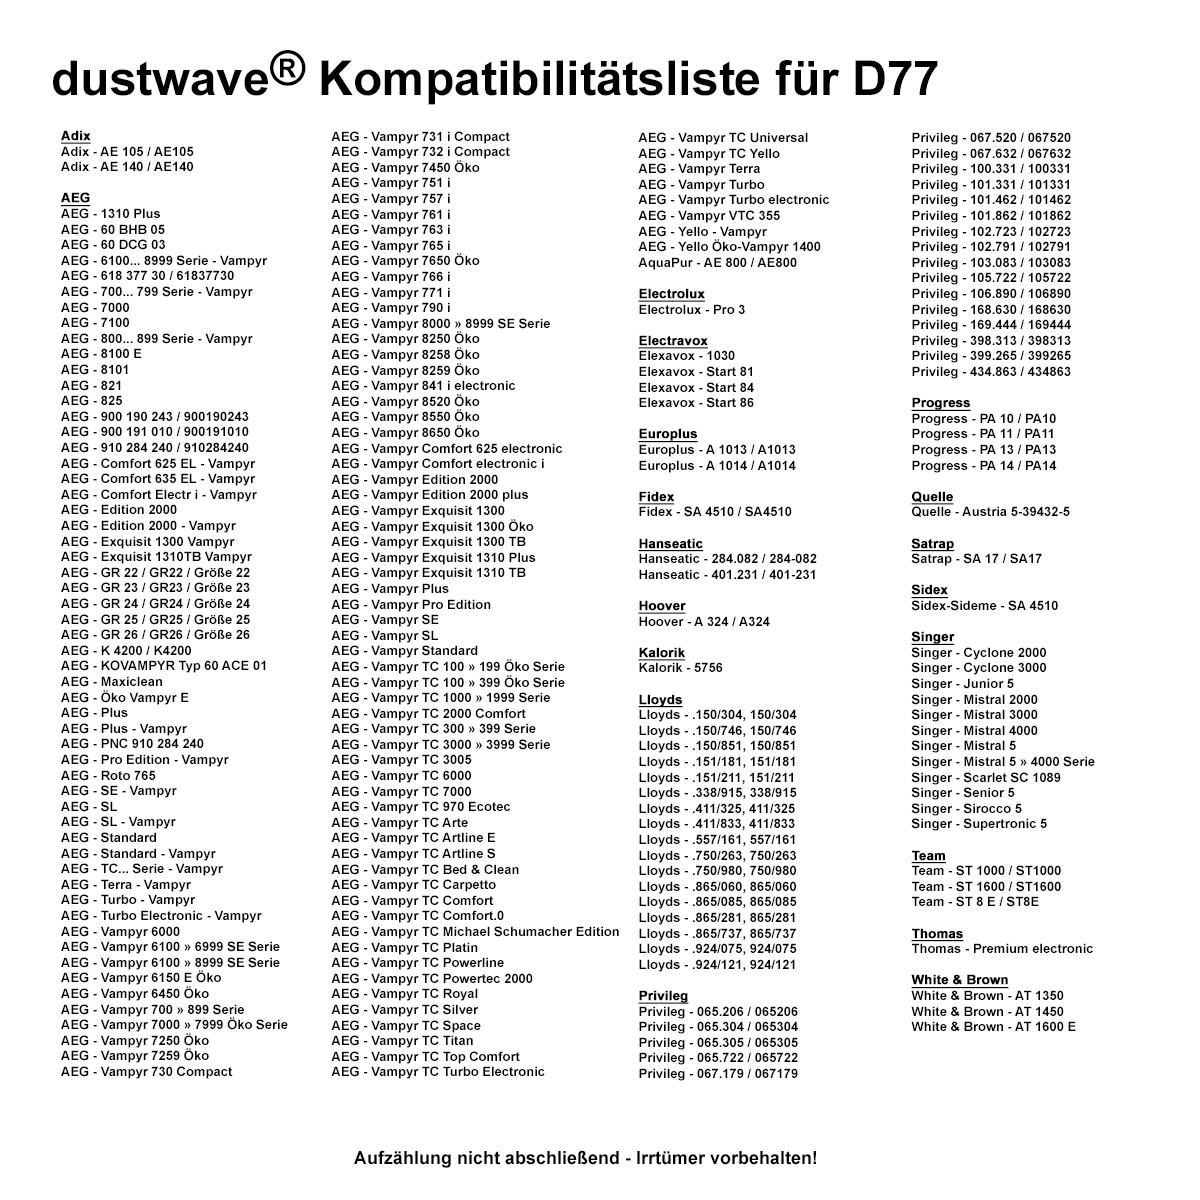 Dustwave® 1 Staubsaugerbeutel für AEG Vampyr 8800 - hocheffizient, mehrlagiges Mikrovlies mit Hygieneverschluss - Made in Germany